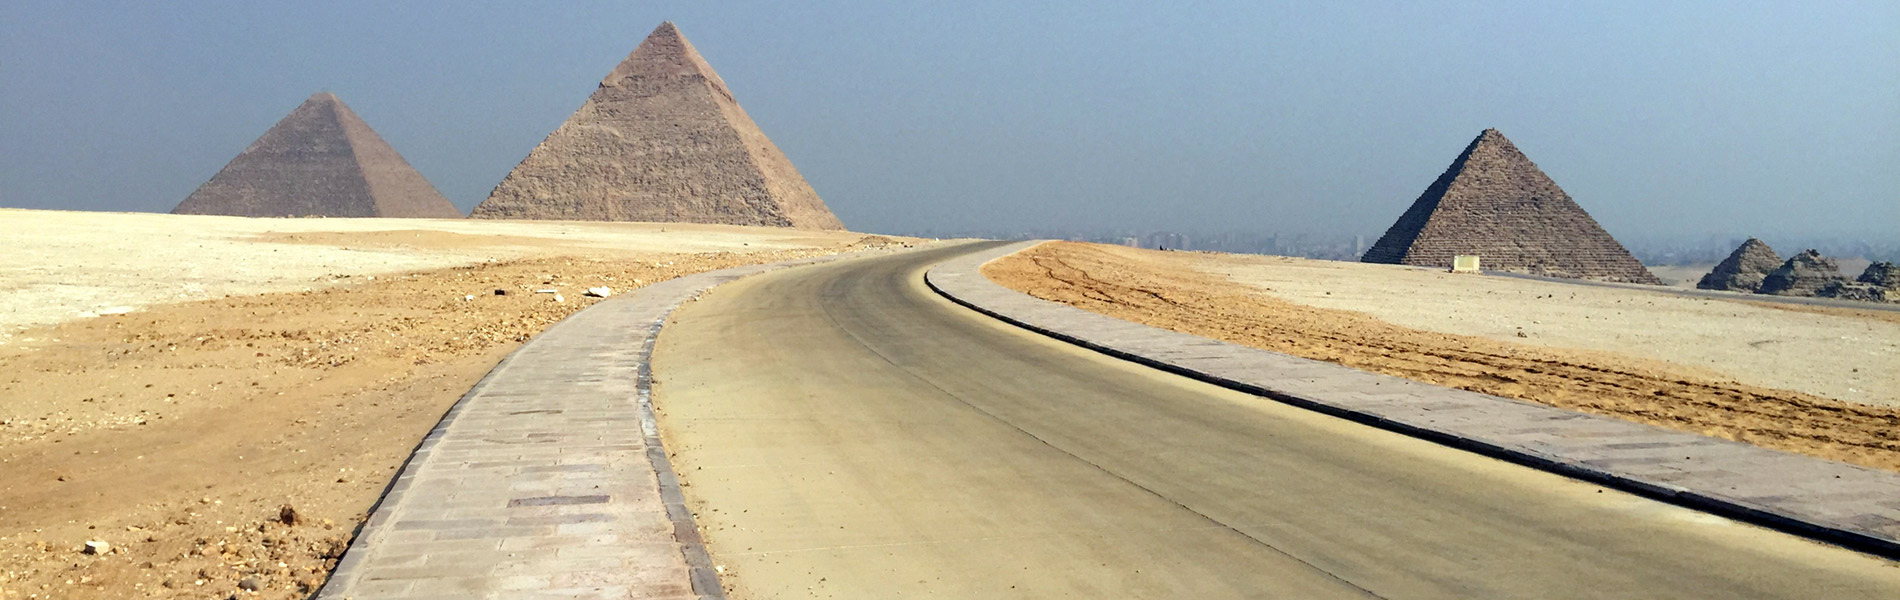 Ägypten Pyramiden Gizeh